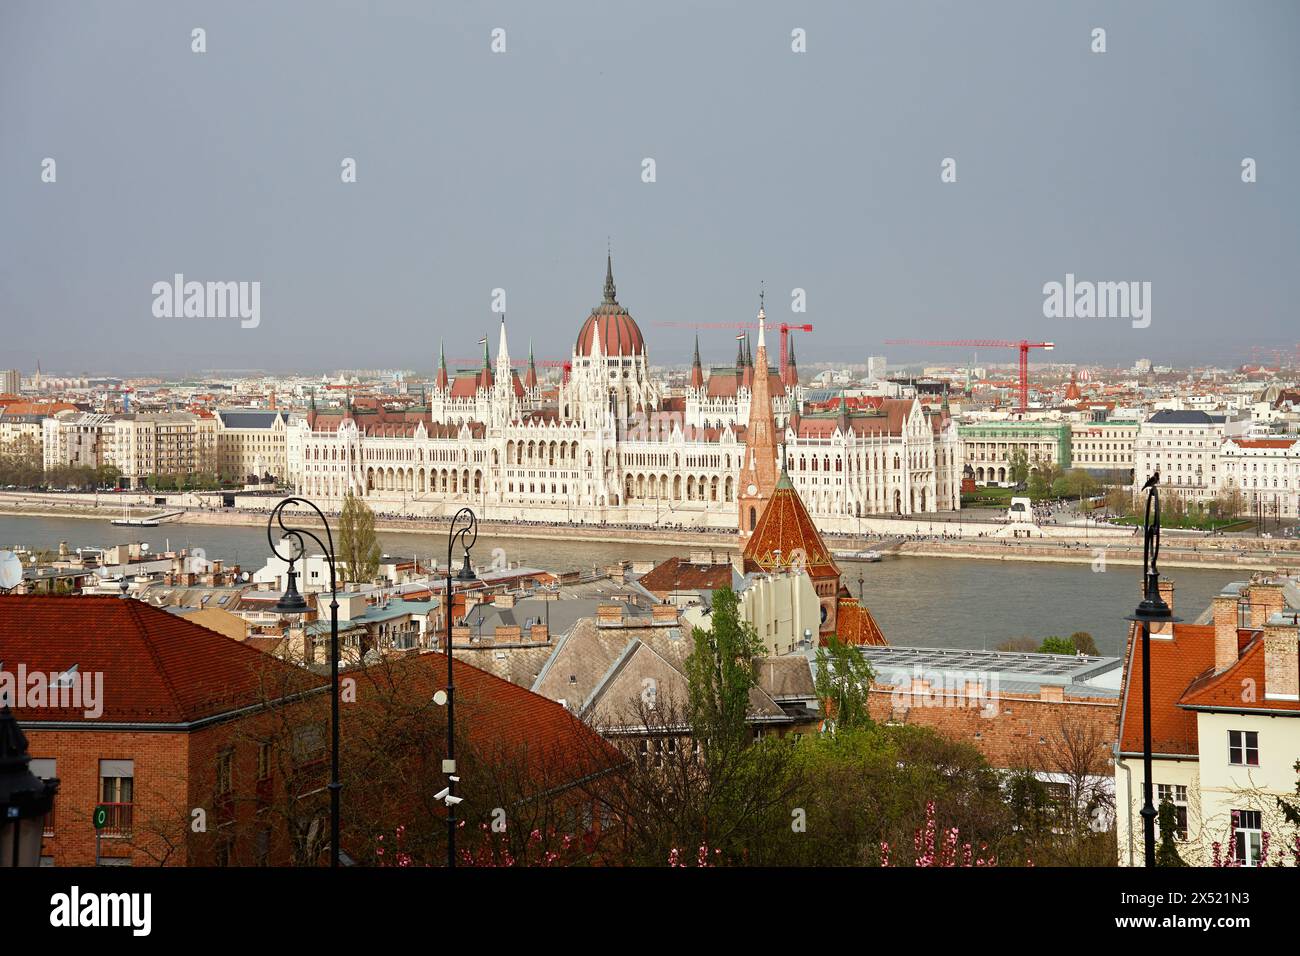 Panoramablick auf die Skyline von Budapest an der Donau. Architektur der Hauptstadt Ungarns mit historischen Gebäuden und berühmten Wahrzeichen Stockfoto